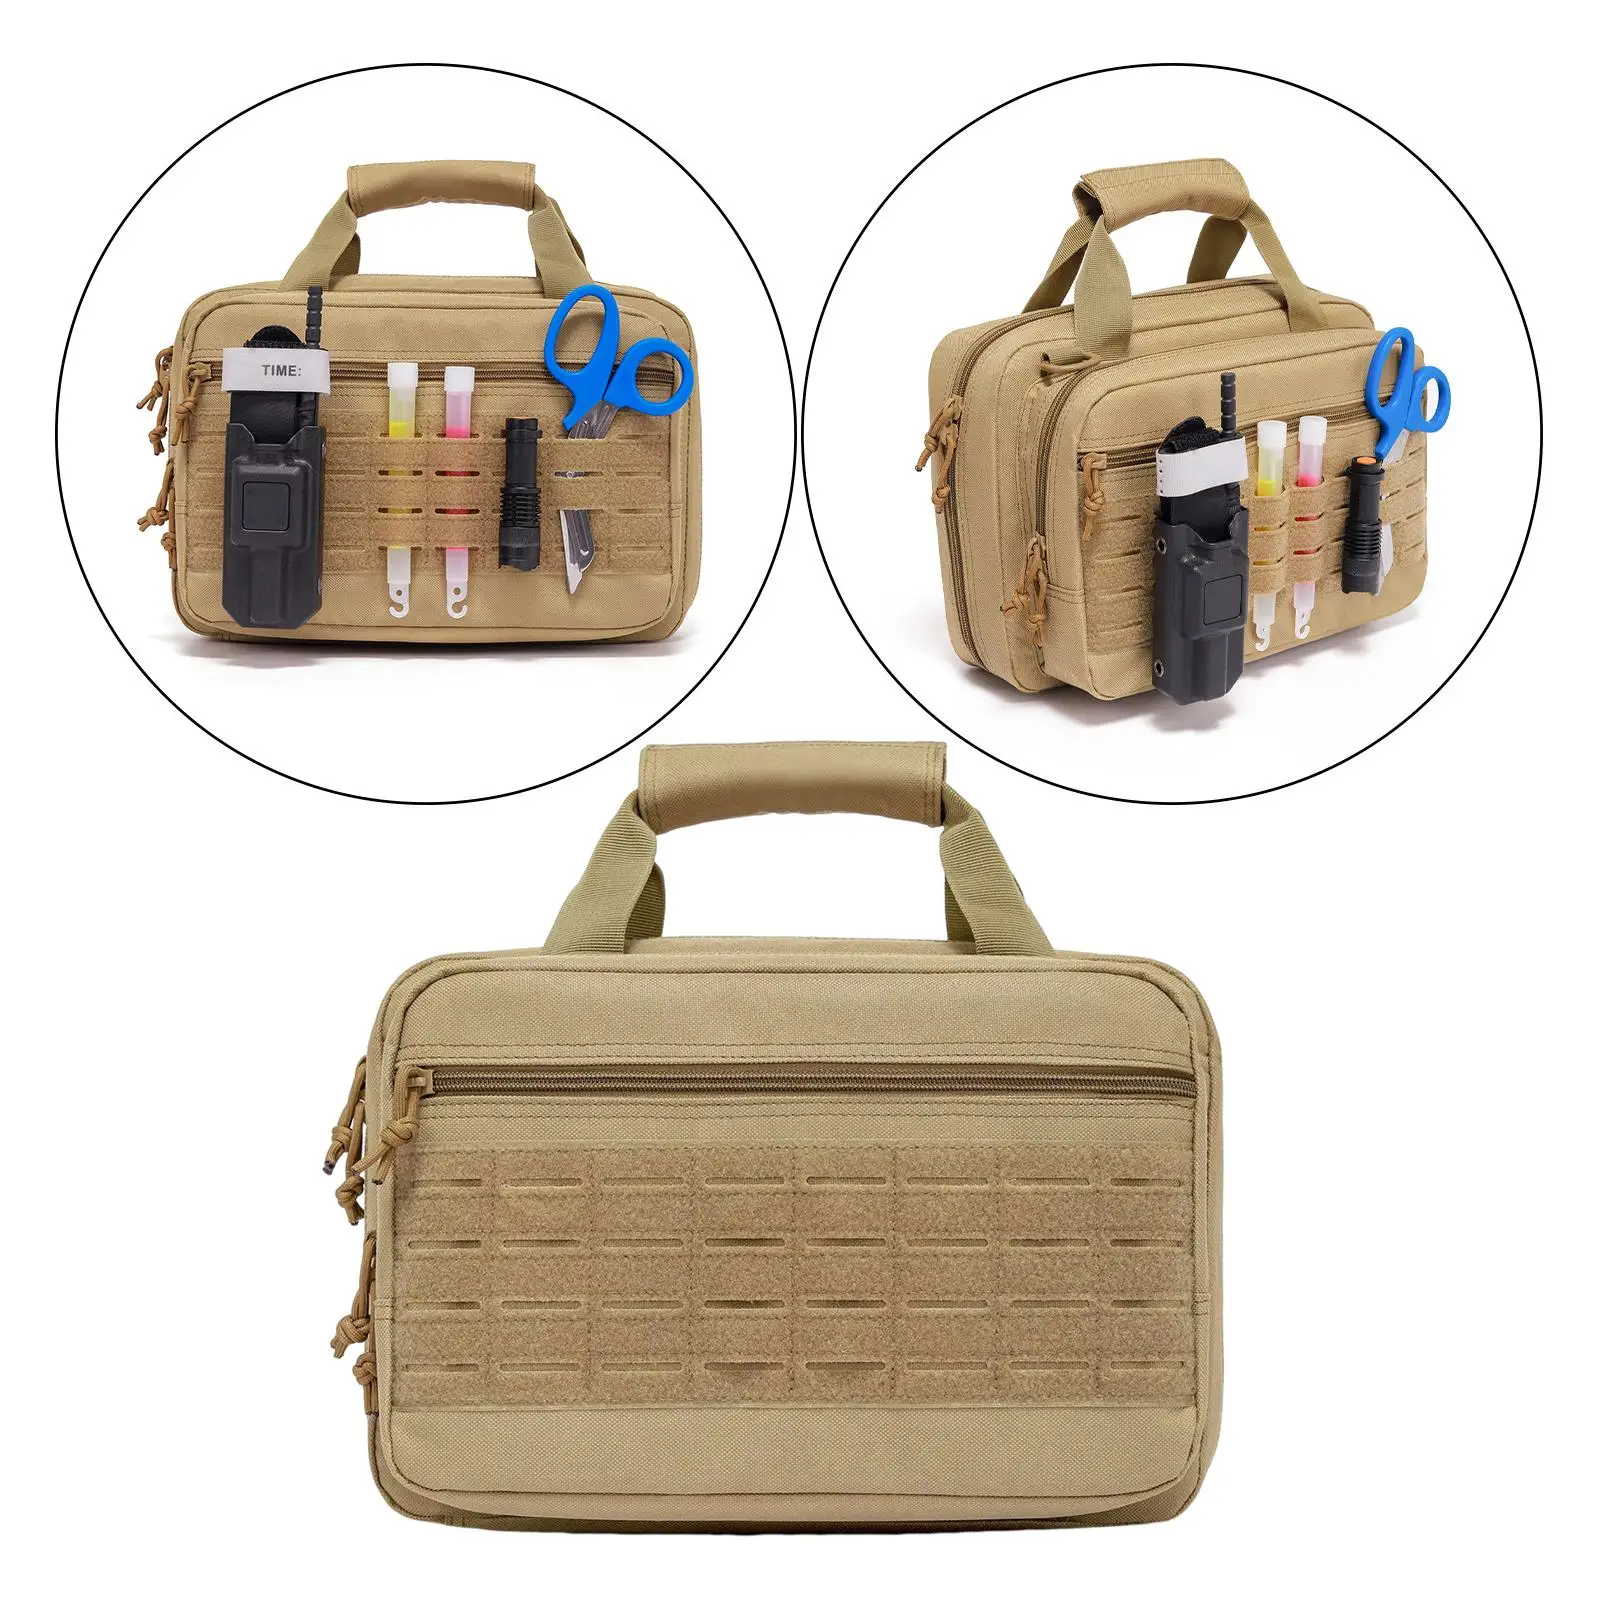 Portable Tool Bag Collapsible Picnic Basket Reusable Fishing Box for Home